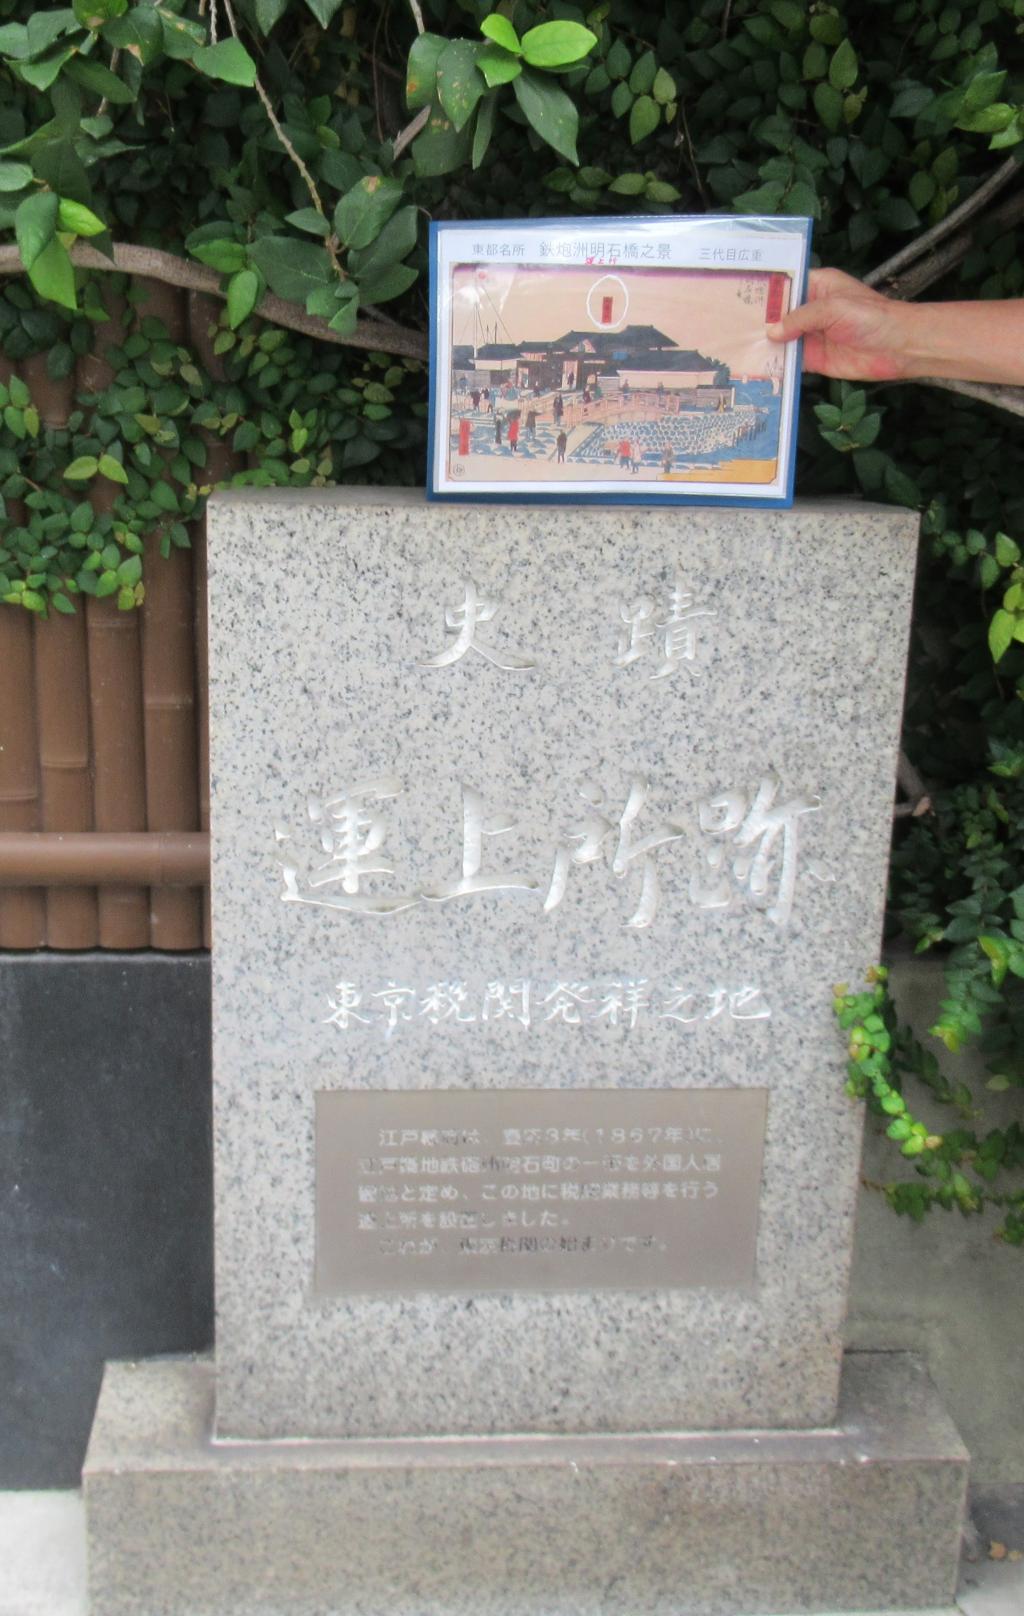 運上所跡　切絵図を持ってガイド 隅田川　重要文化財三橋　ドボラジ・ポロシャツでガイド　勝鬨橋